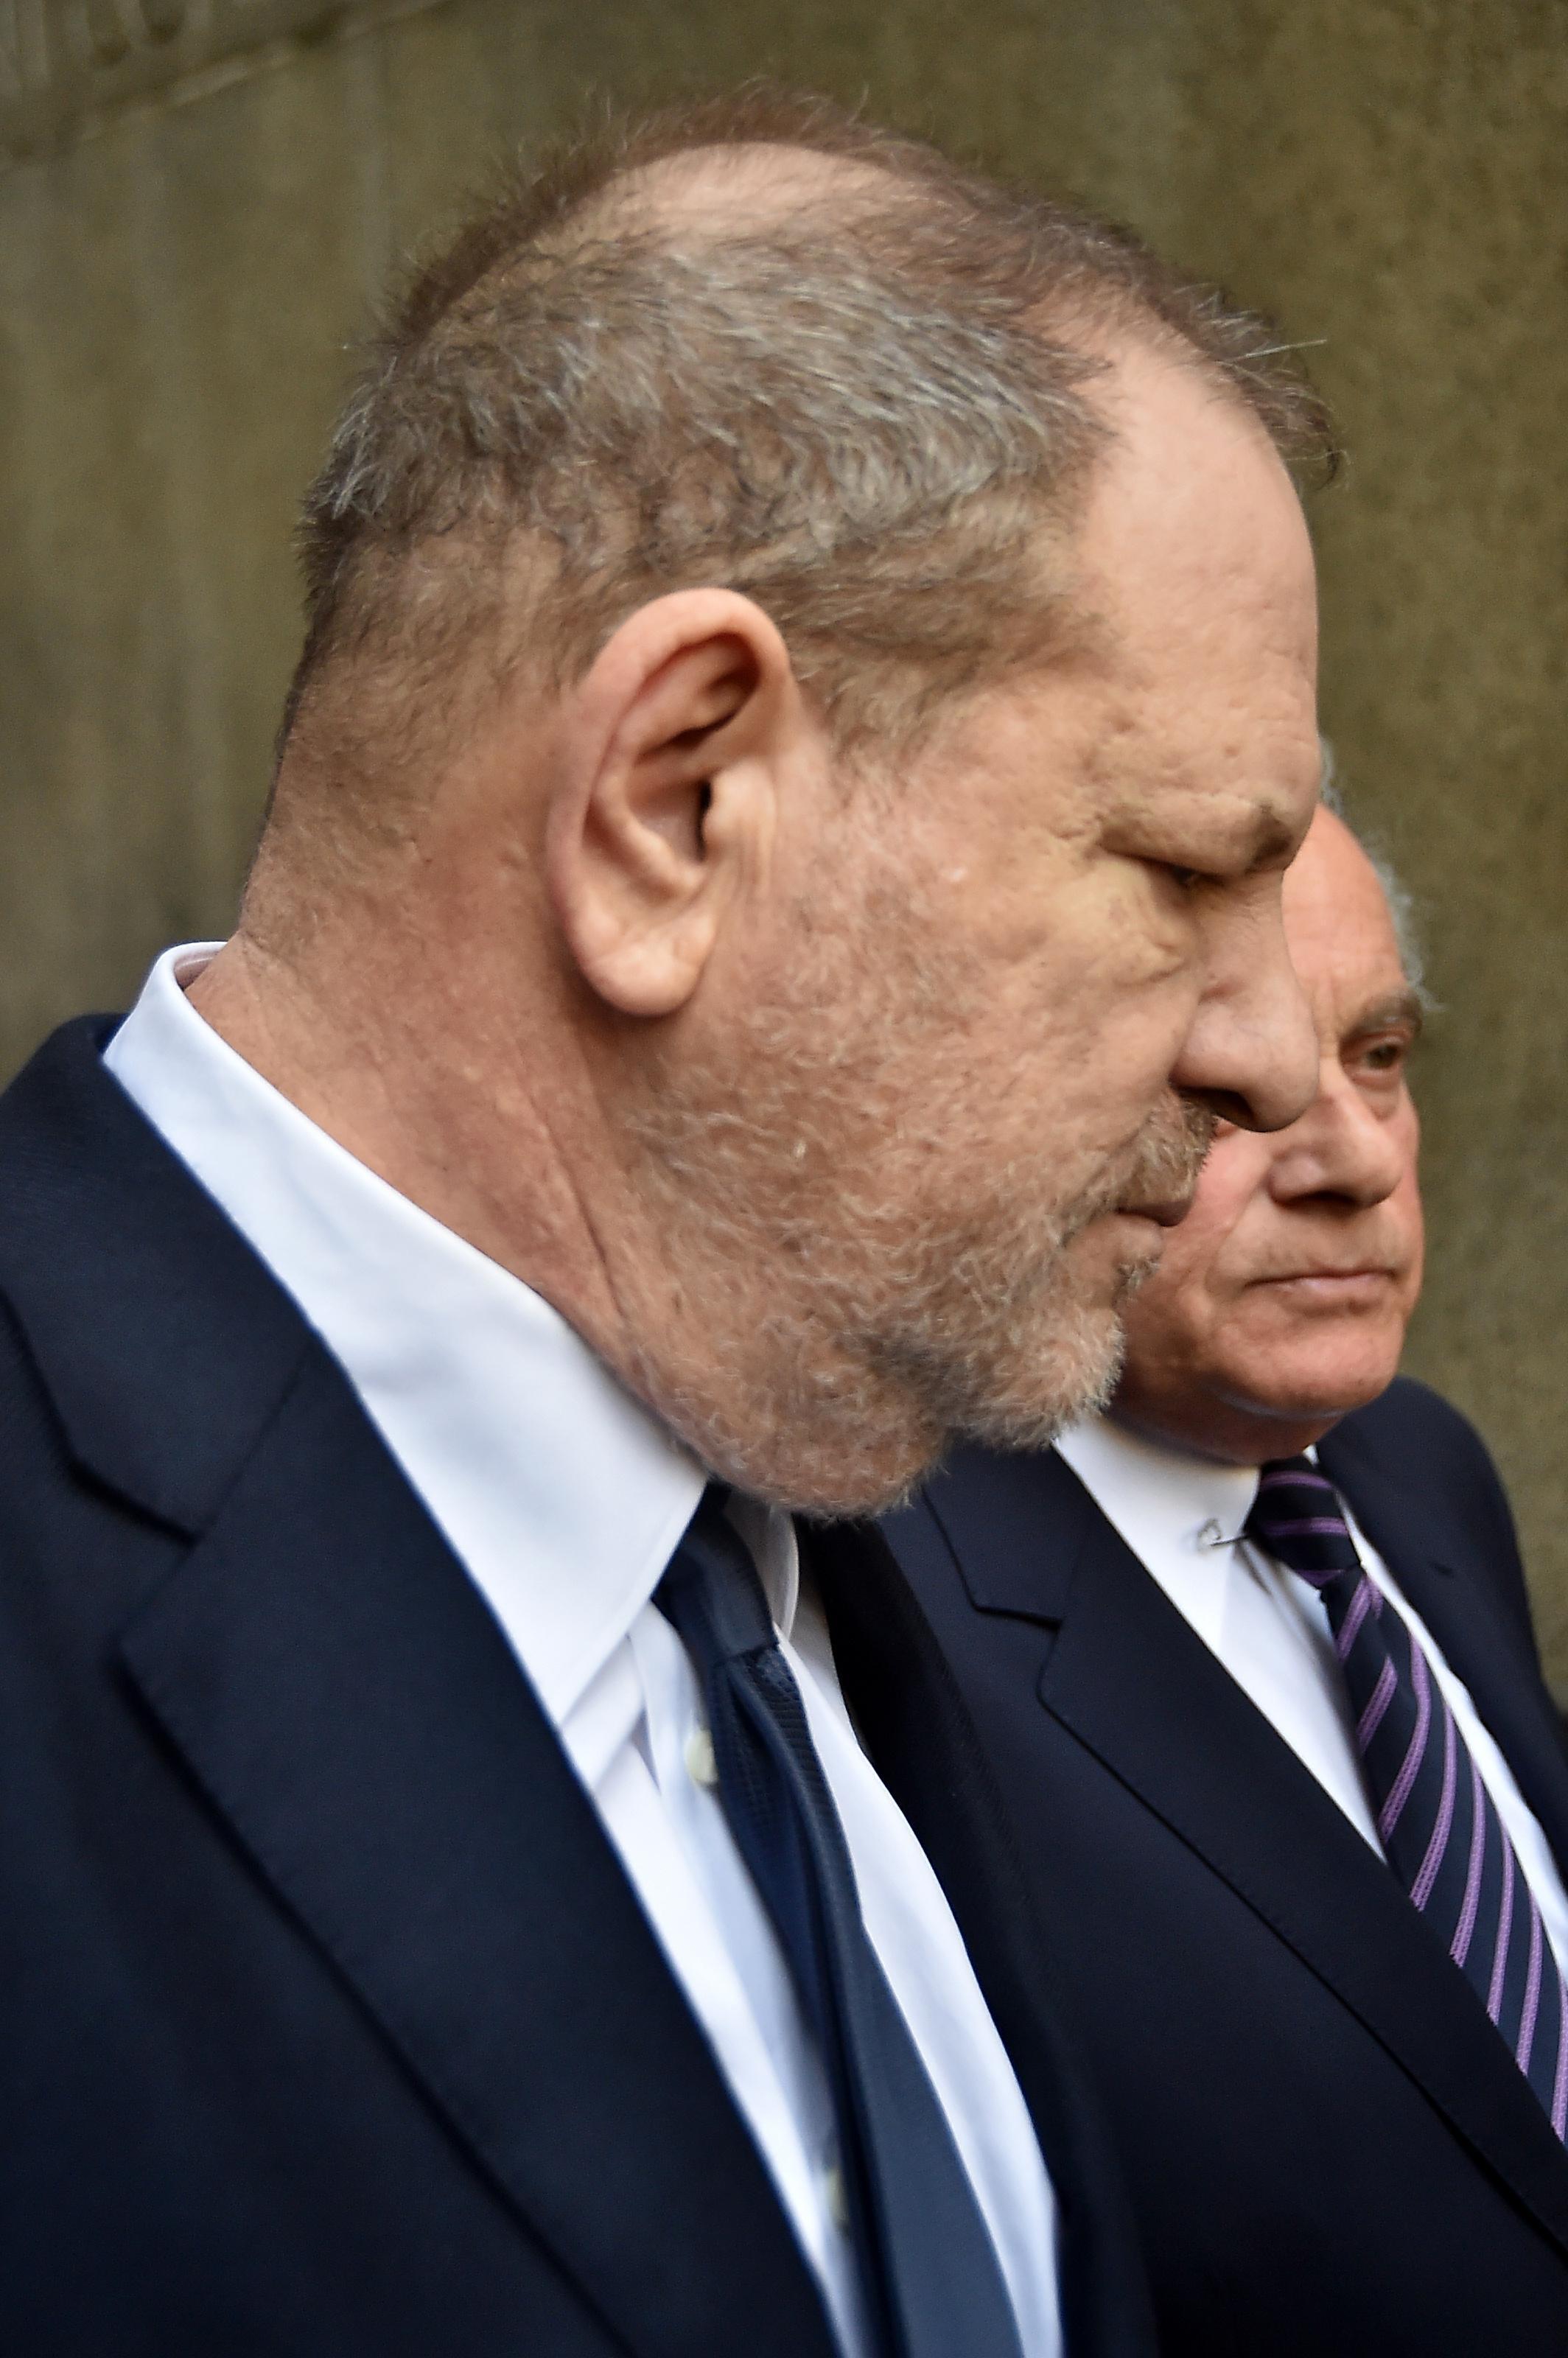 Cara Delevingne Harvey Weinsteinın taciz skandalıyla ilgili konuştu